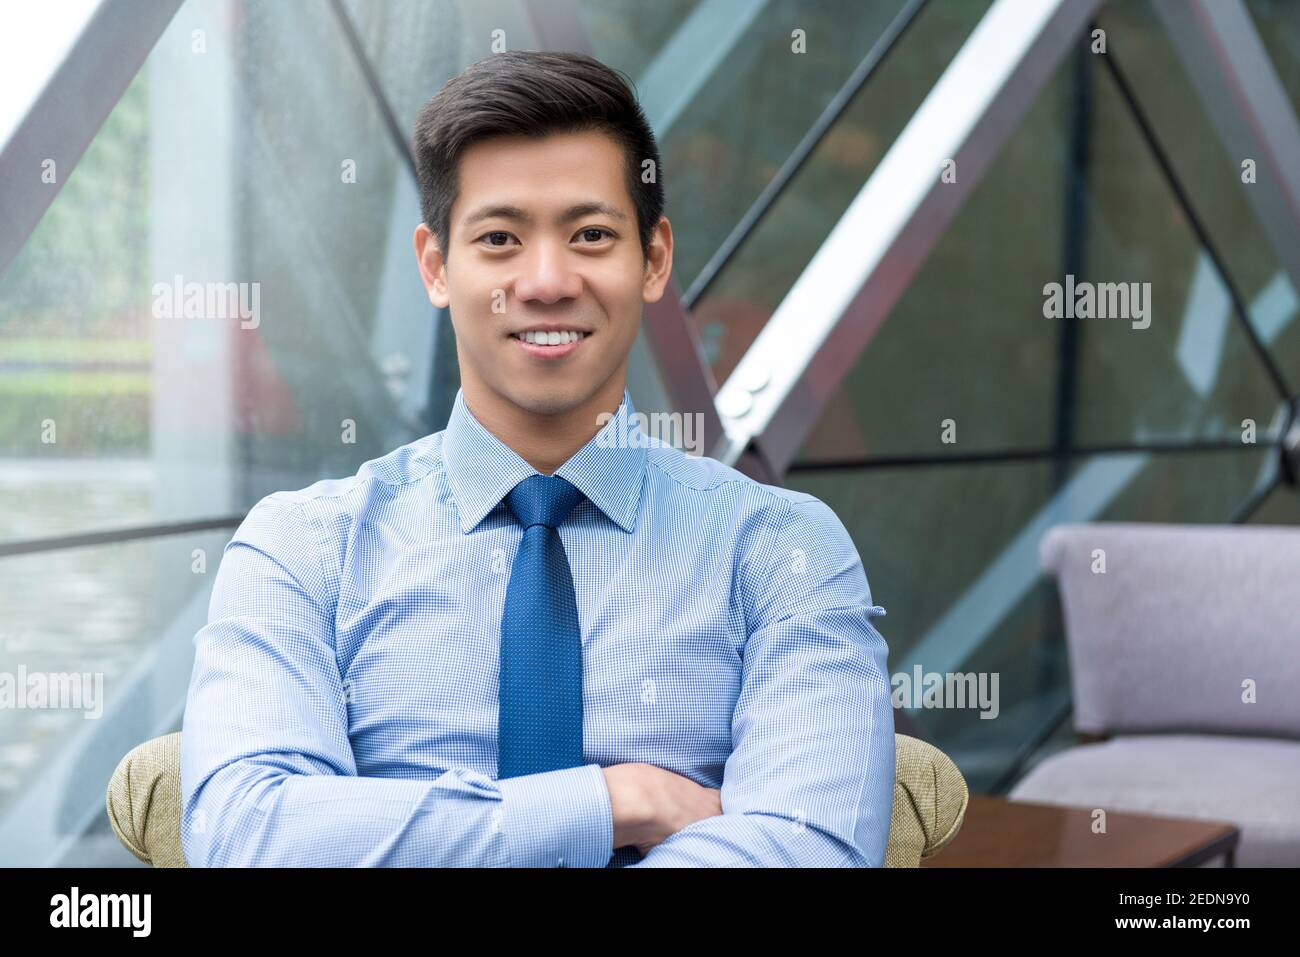 Retrato de un joven y sonriente hombre de negocios asiático tailandés-chino sentado con brazo cruzado en el salón de la oficina Foto de stock